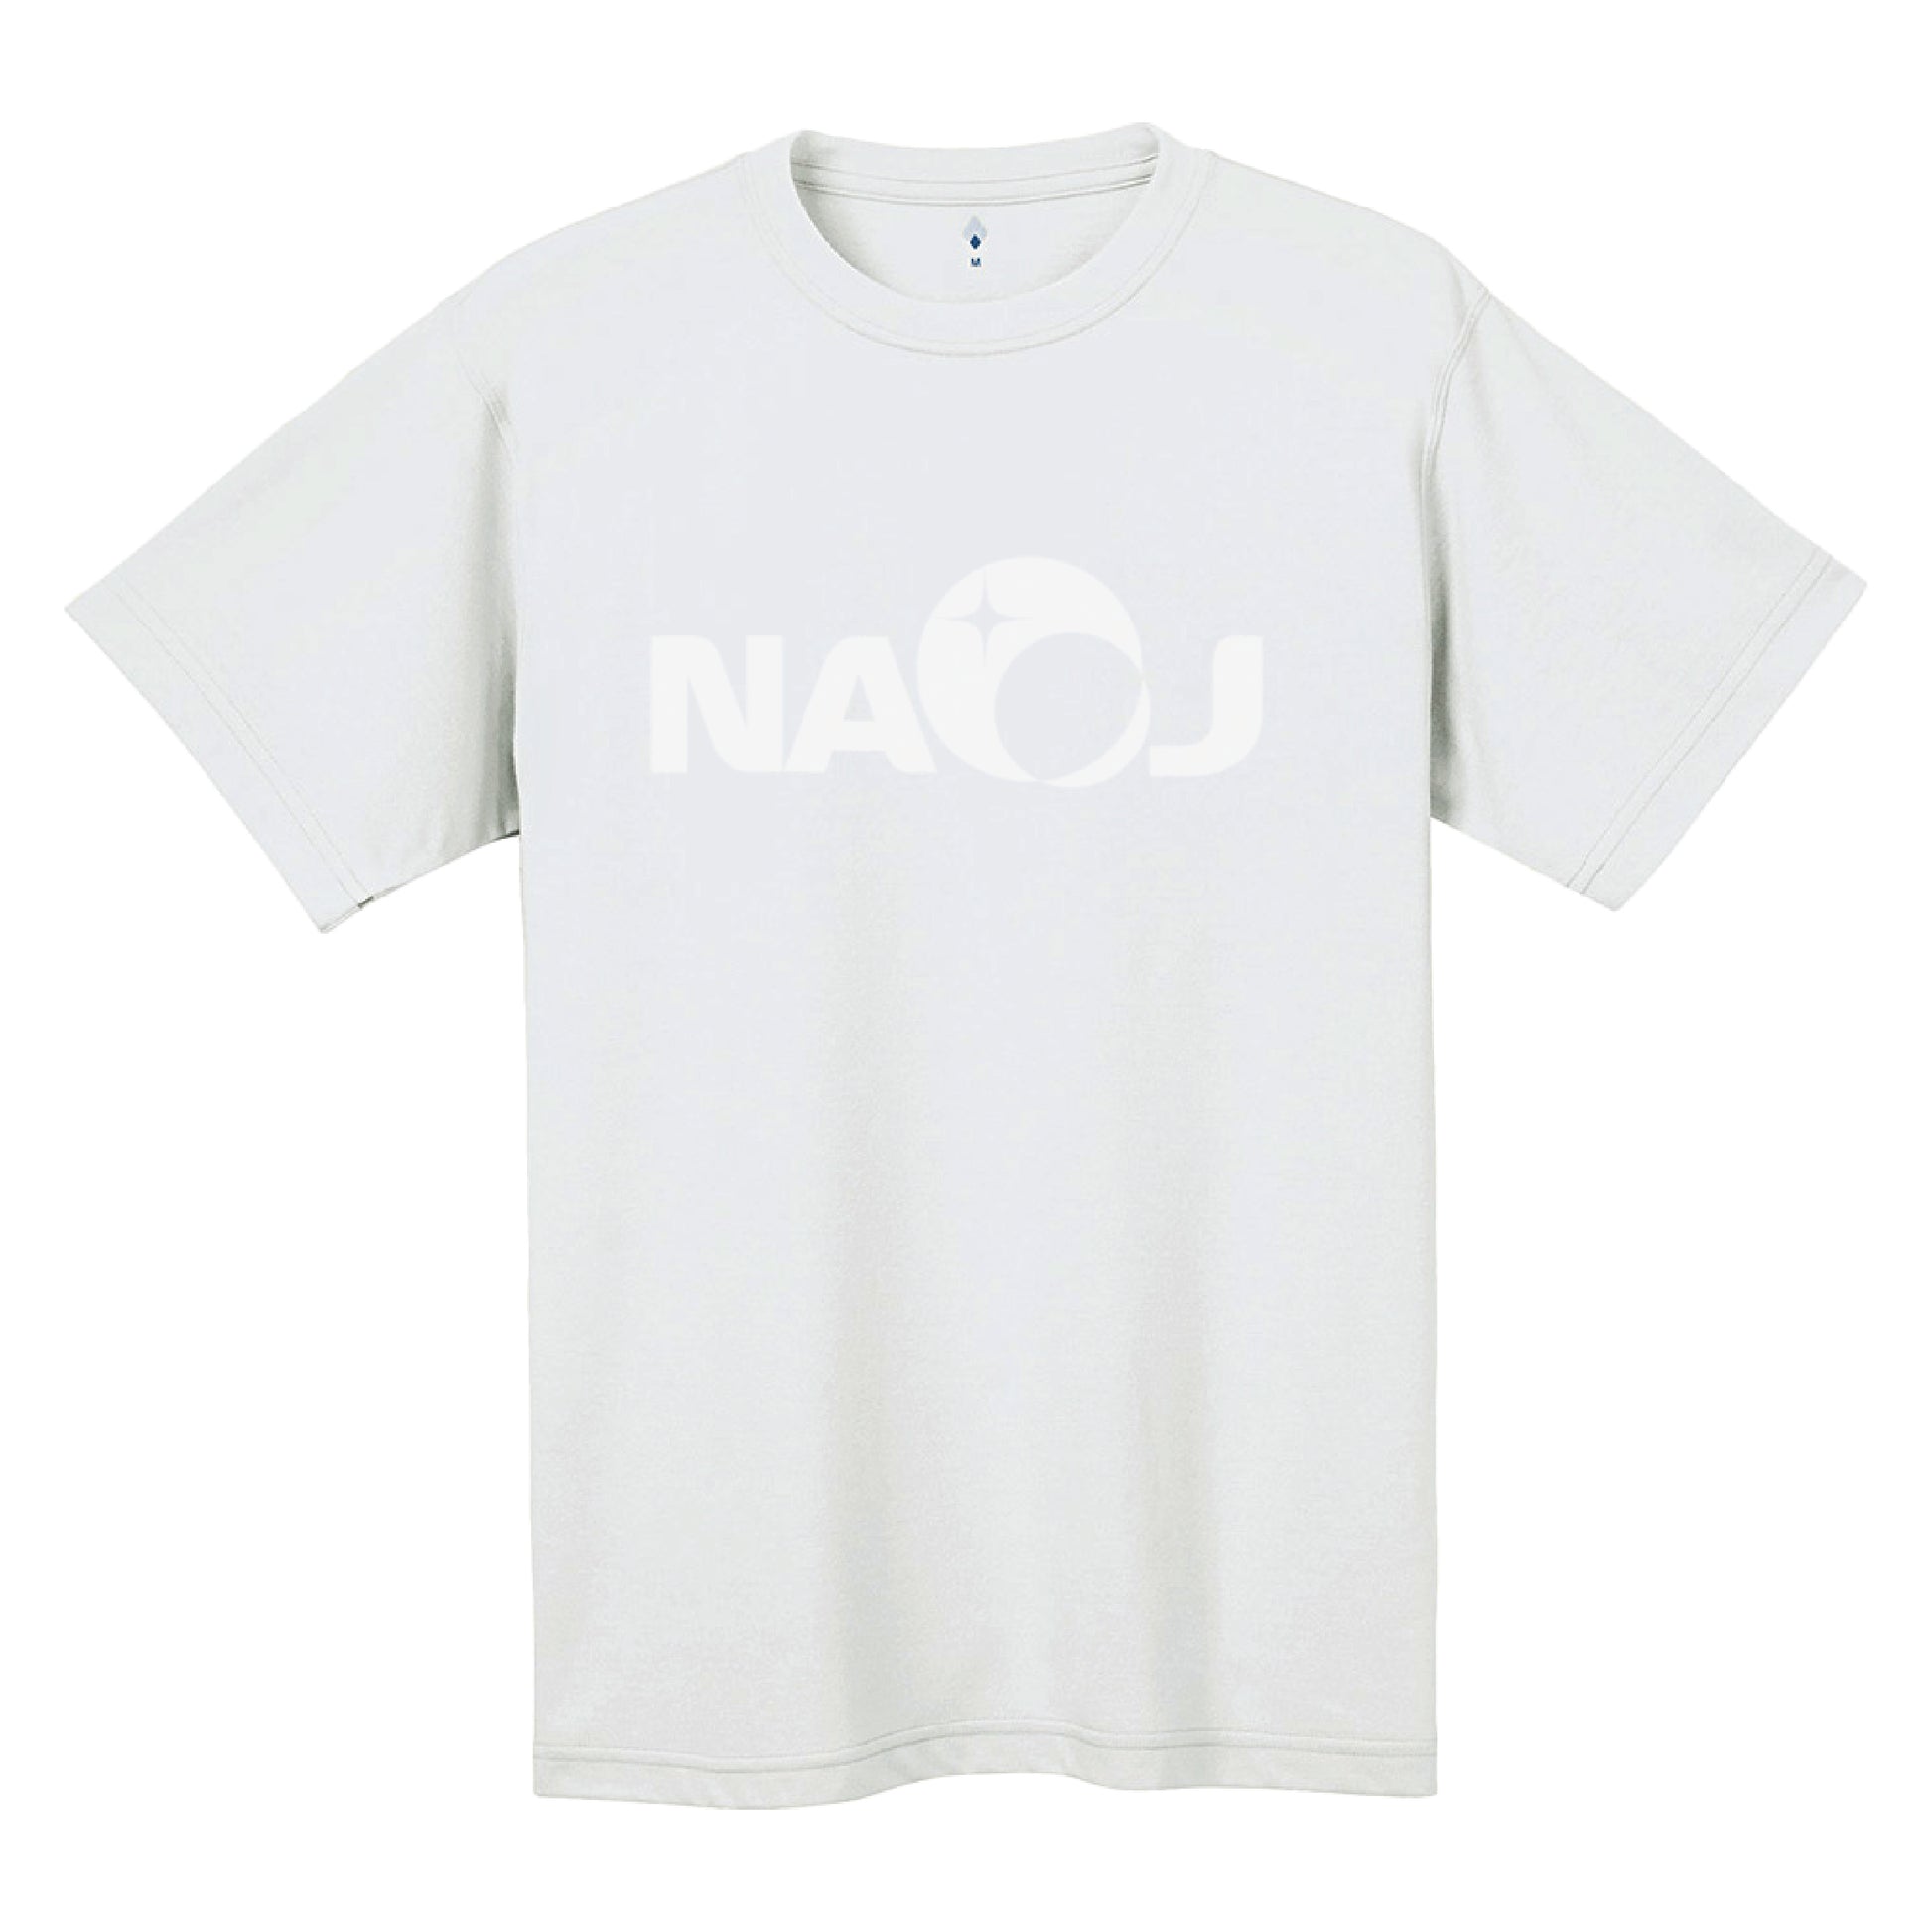 国立天文台 NAOJ ロゴマーク WIC. Tシャツ ホワイト x ホワイト S 00